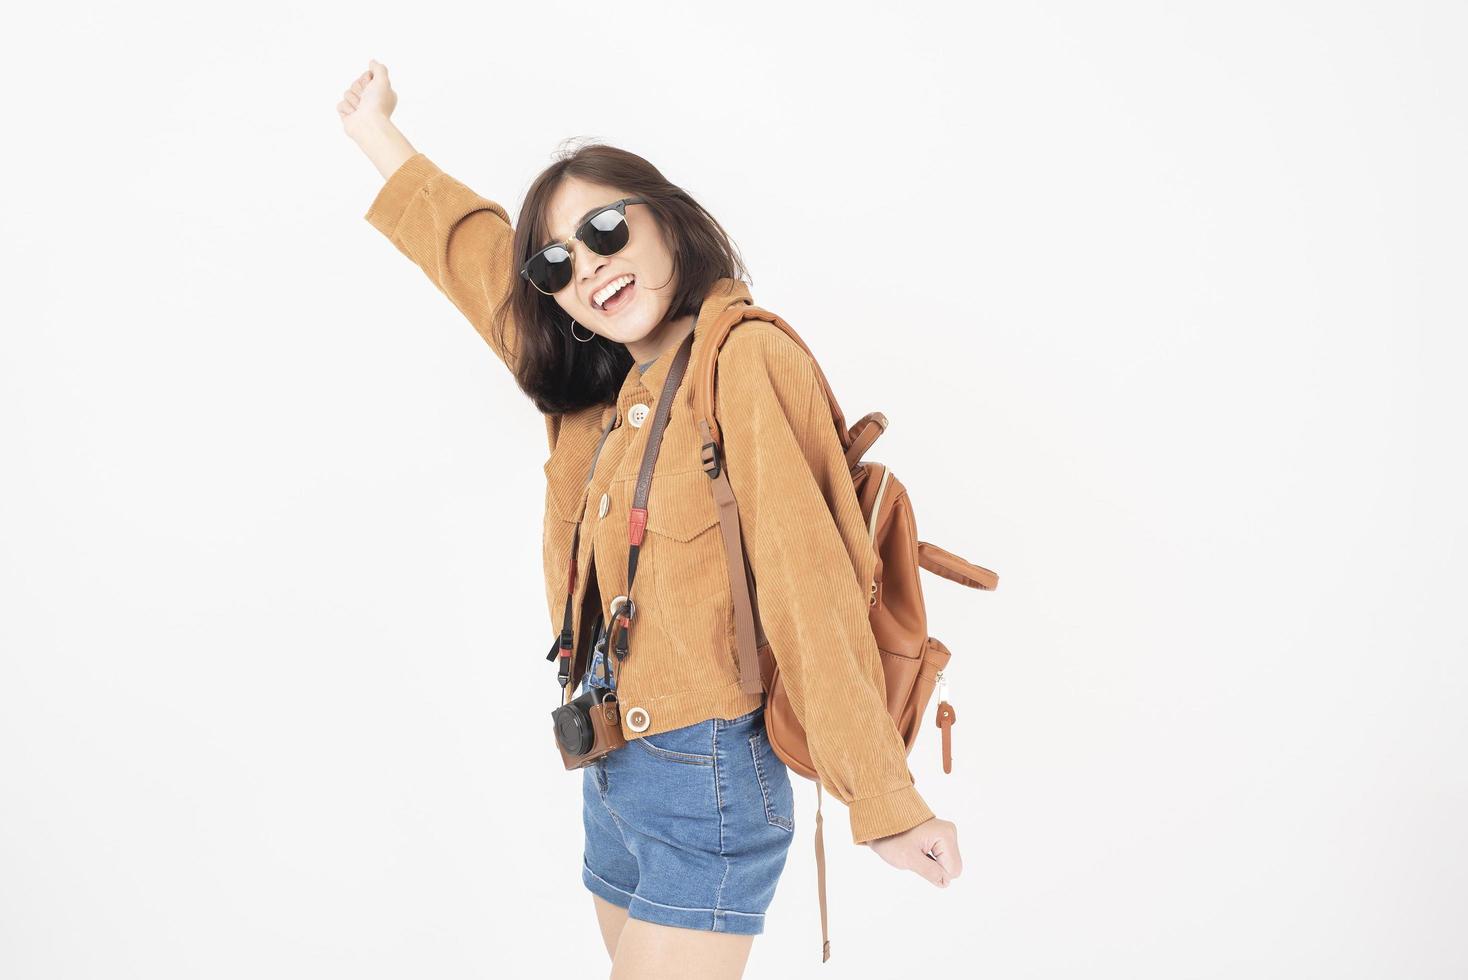 schöne junge asiatische Touristenfrau glücklich auf weißem Hintergrundstudio foto